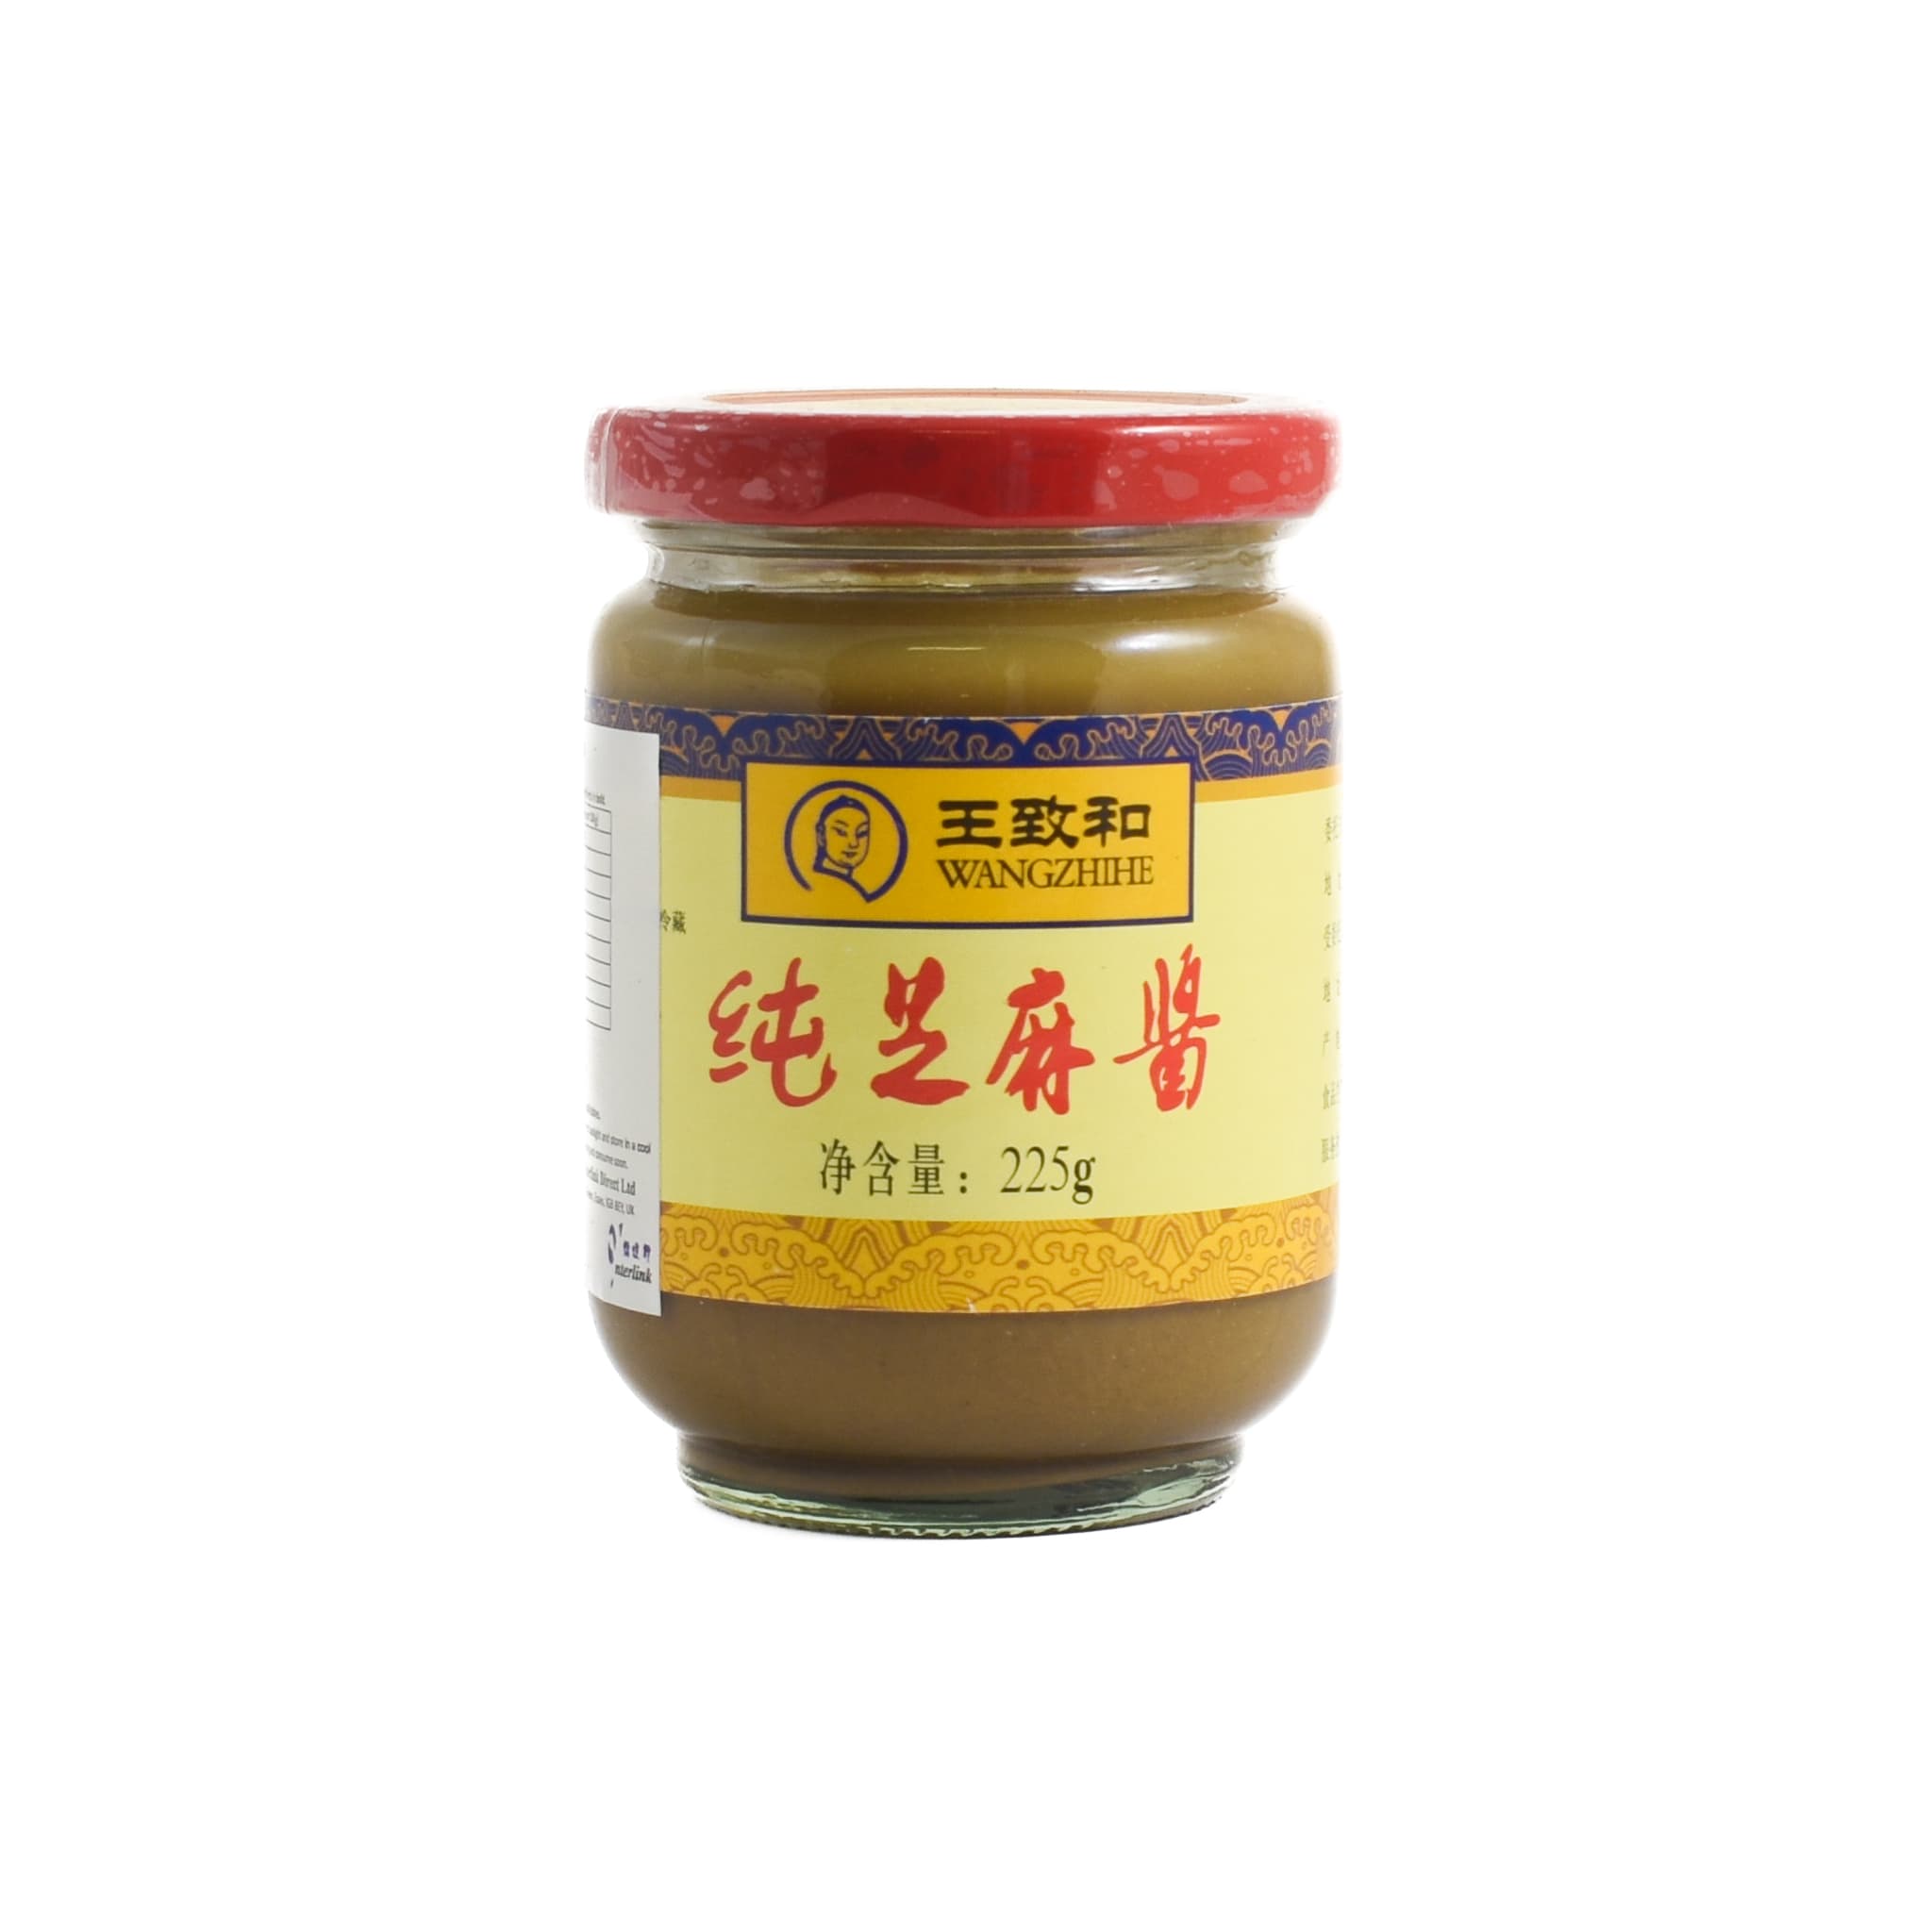 Wangzhihe Sesame Paste, 225g